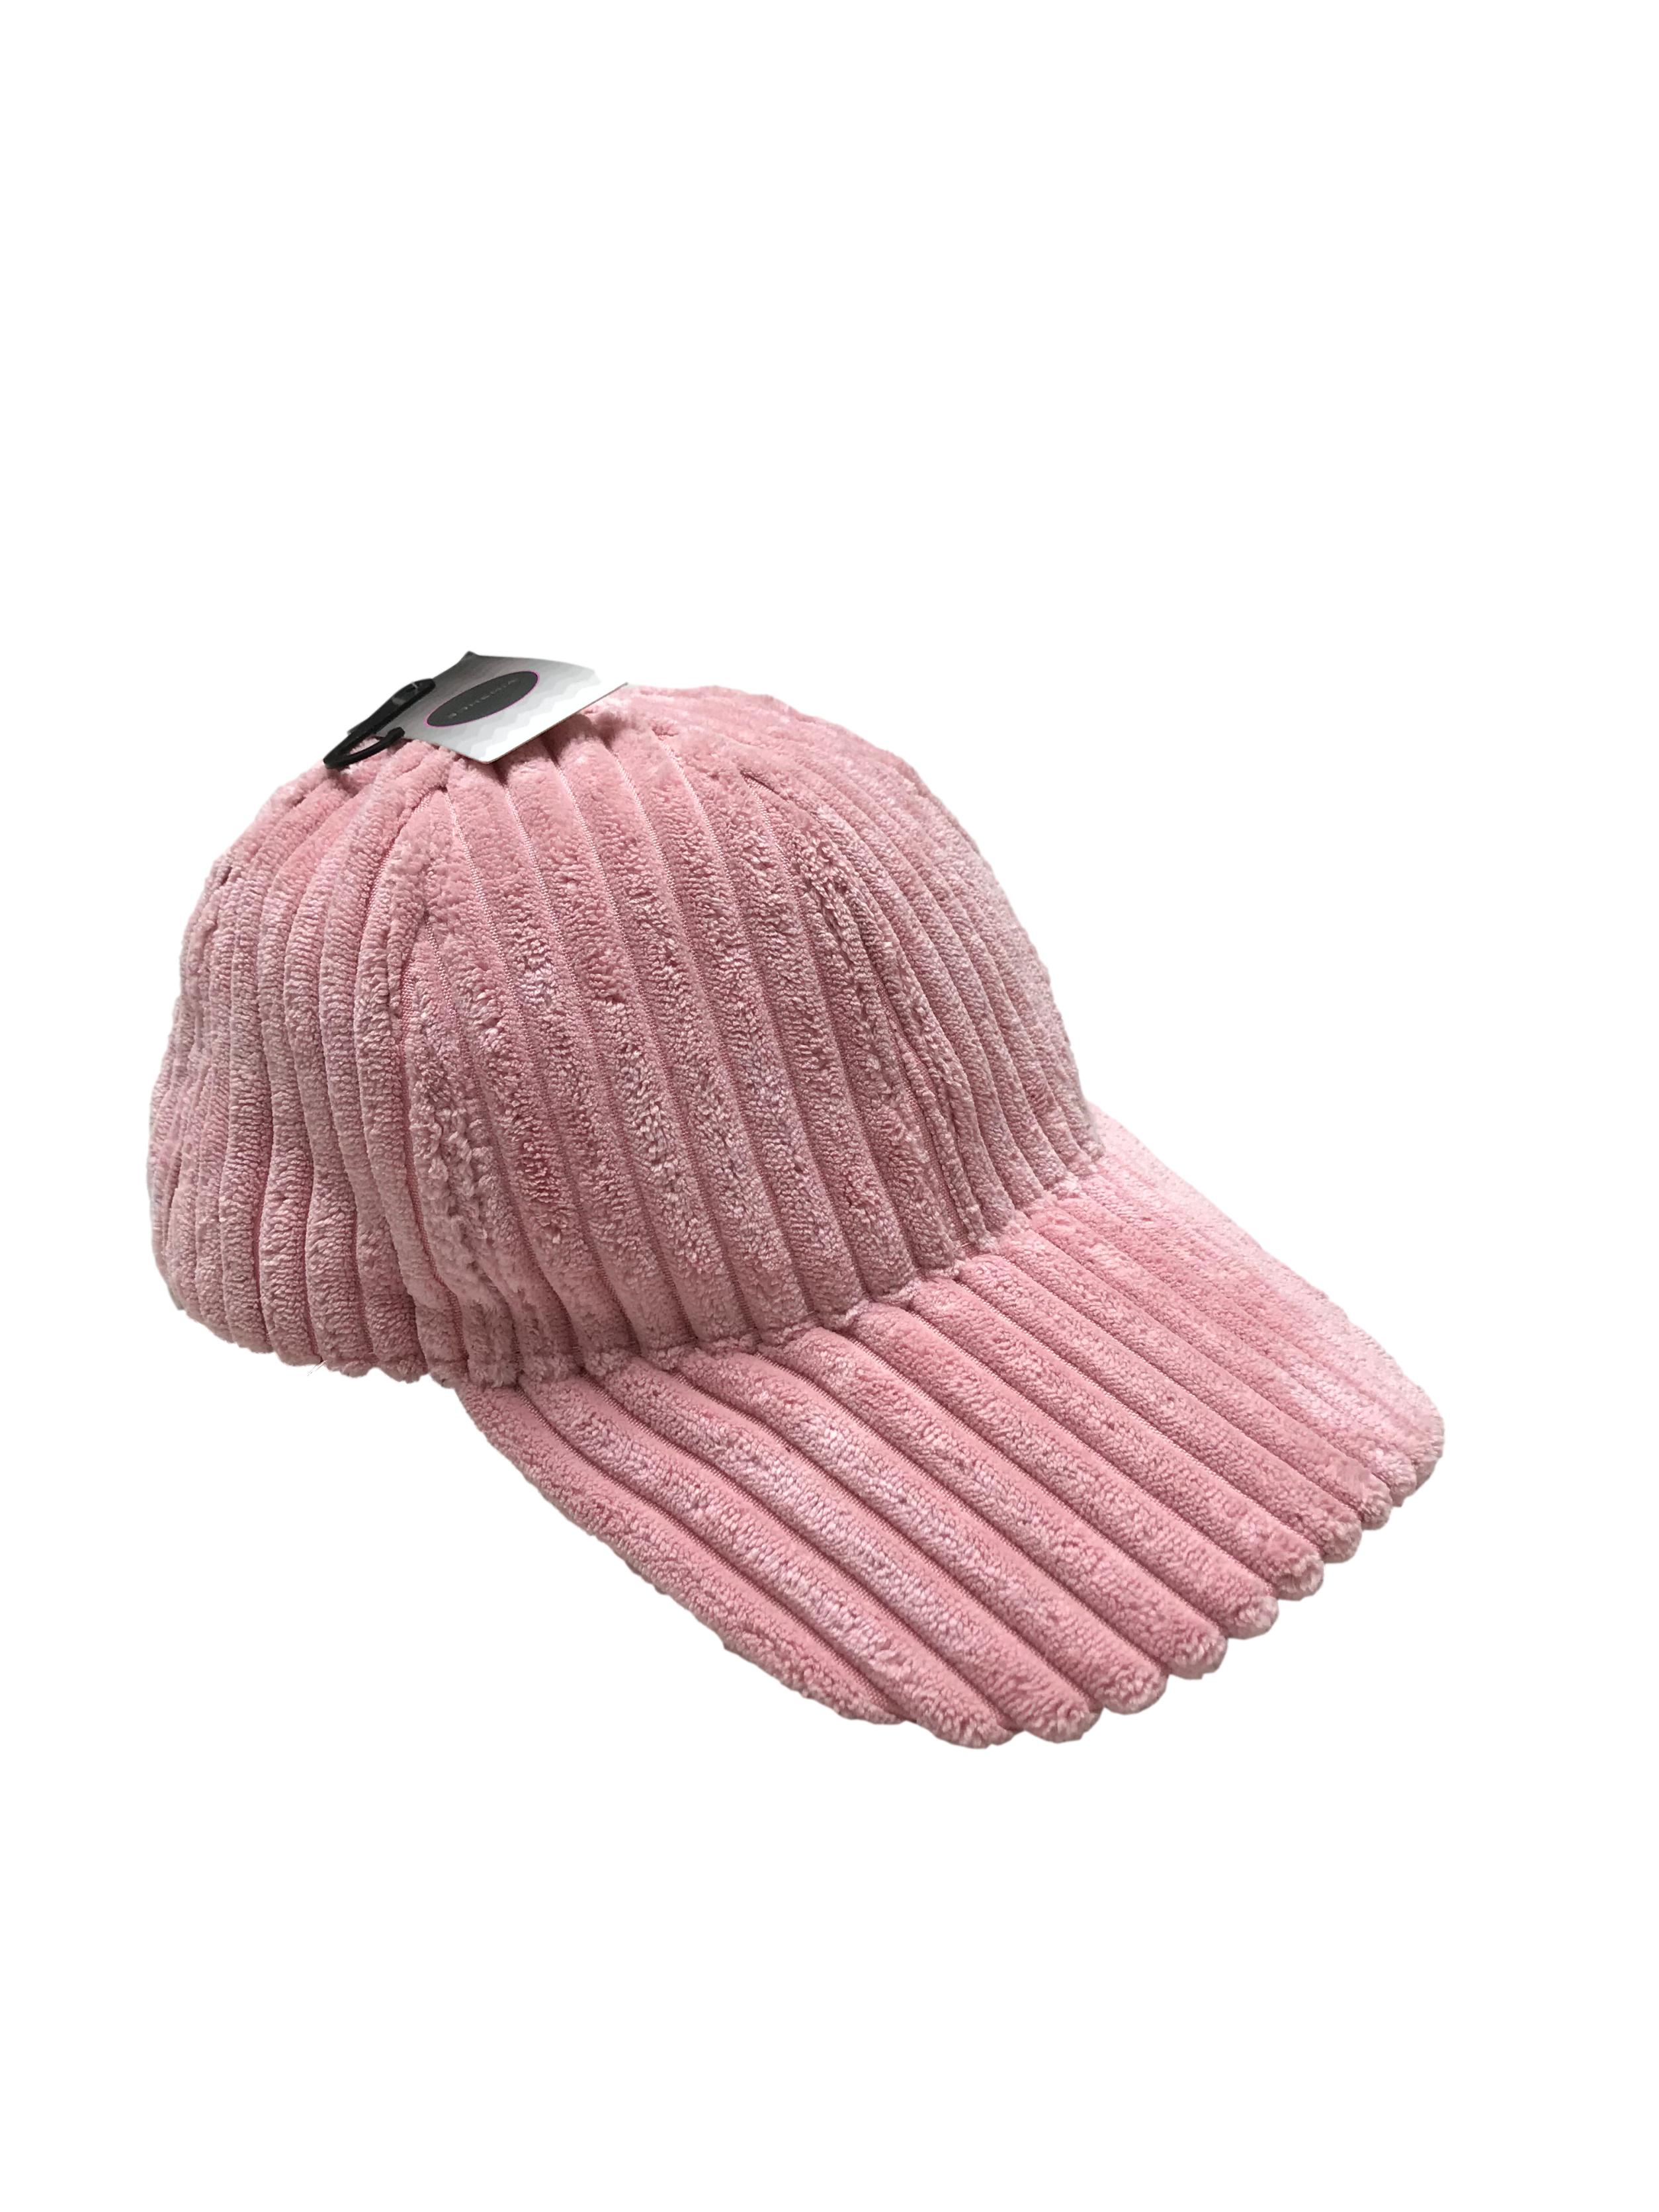 Gorra palo rosa de tela acanalada acolchada. Velcro posterior para regular el tamaño. Nueva con etiqueta.